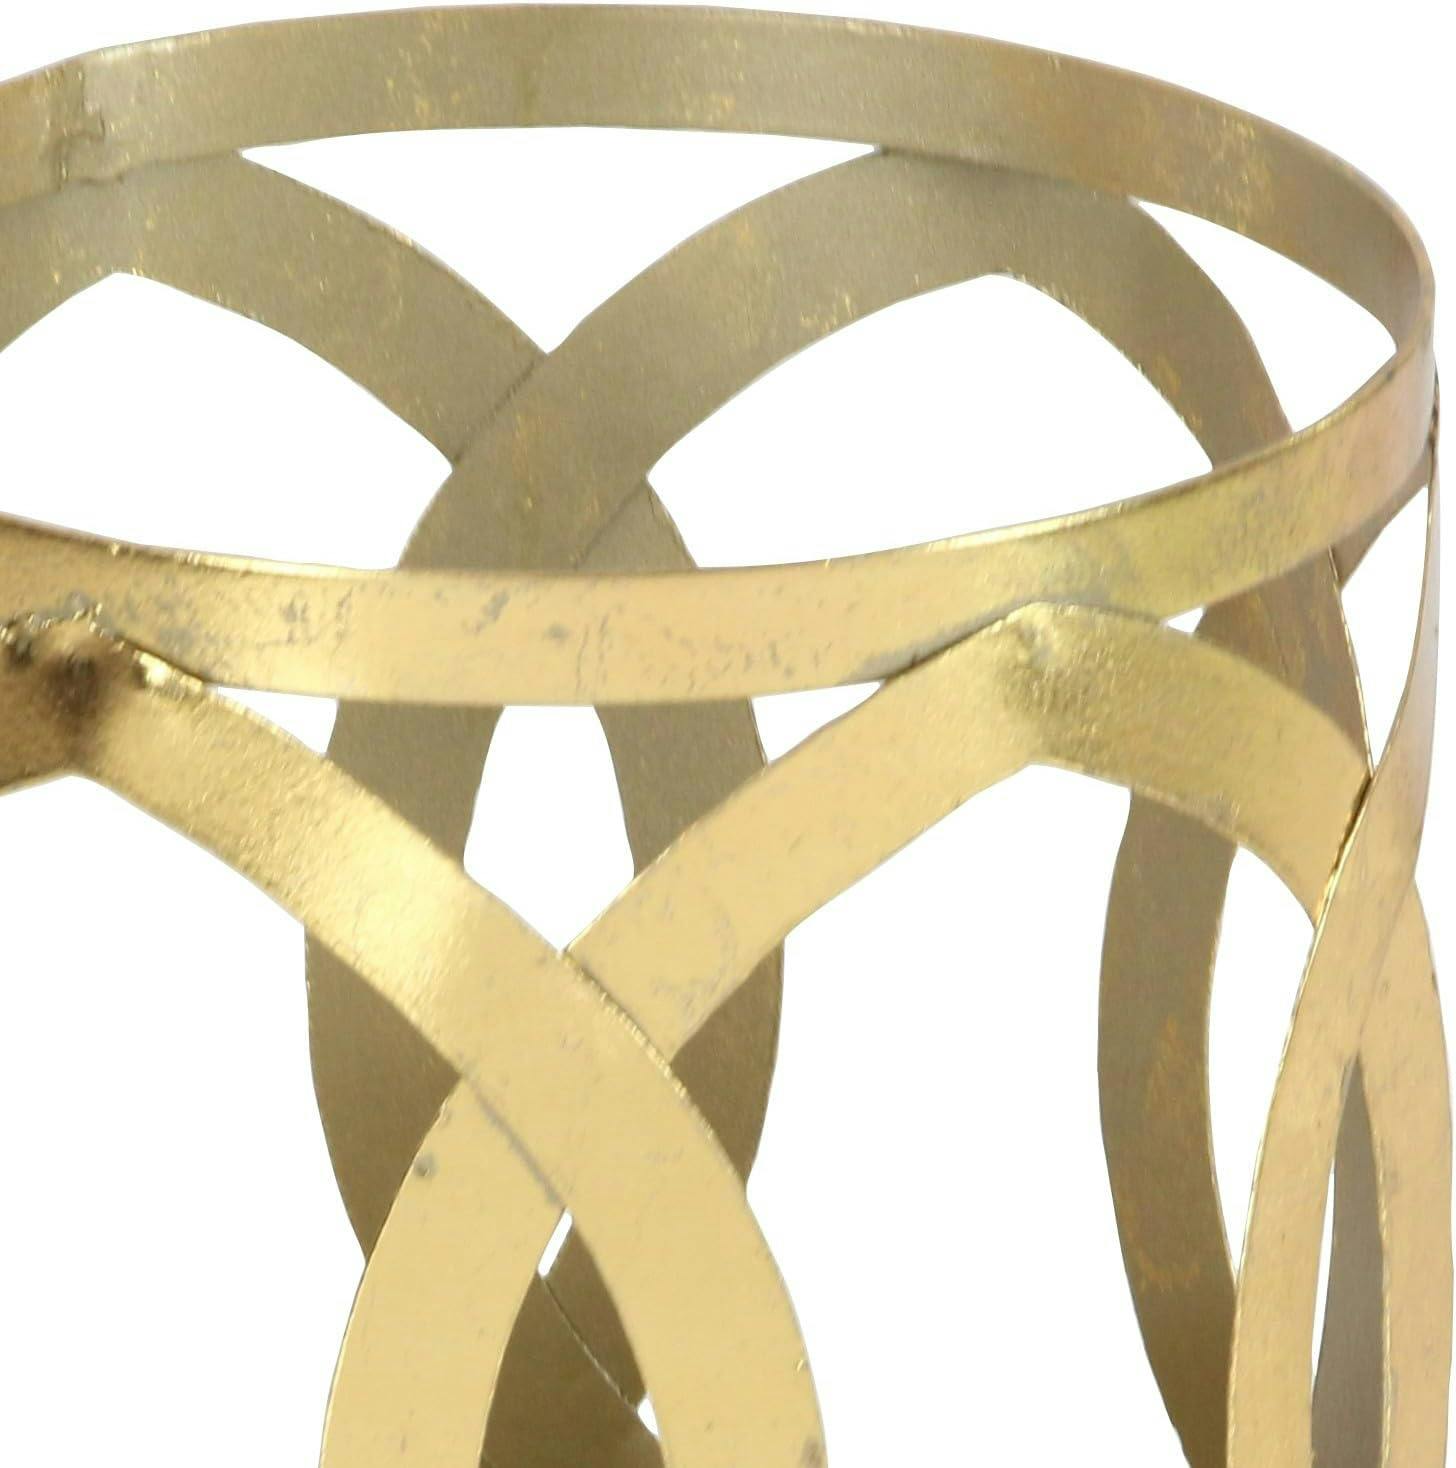 Elegant Gold Metal & Glass 8" Hurricane Hanging Lantern